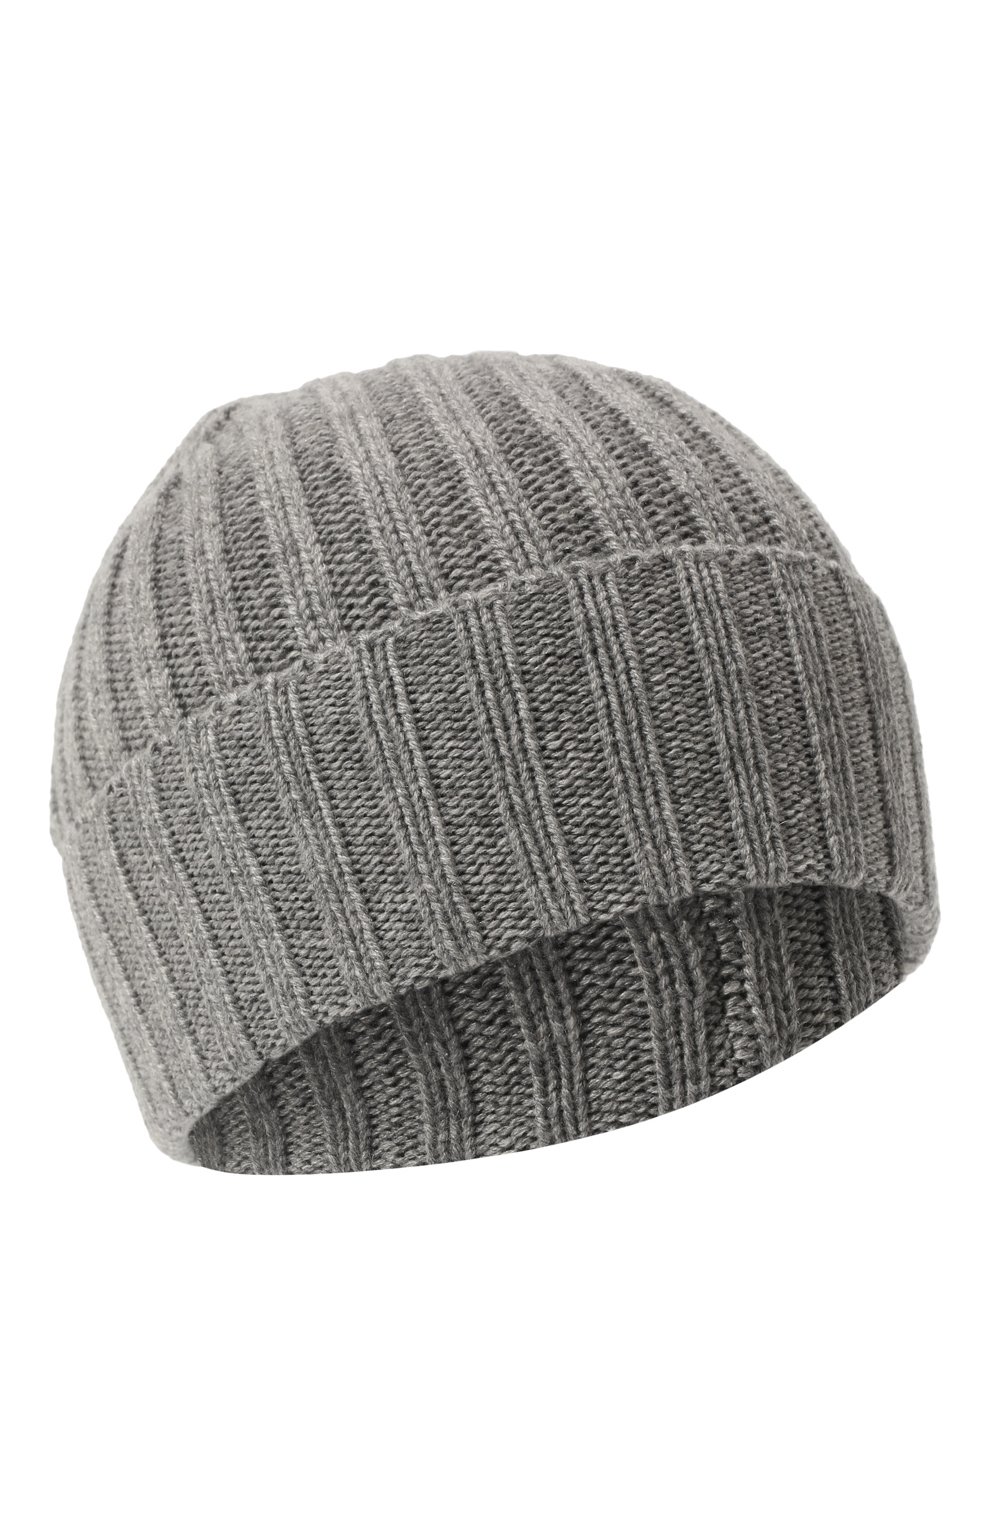 Мужская кашемировая шапка INVERNI серого цвета, арт. 4712 CM | Фото 1 (Материал: Текстиль, Кашемир, Шерсть; Кросс-КТ: Трикотаж)